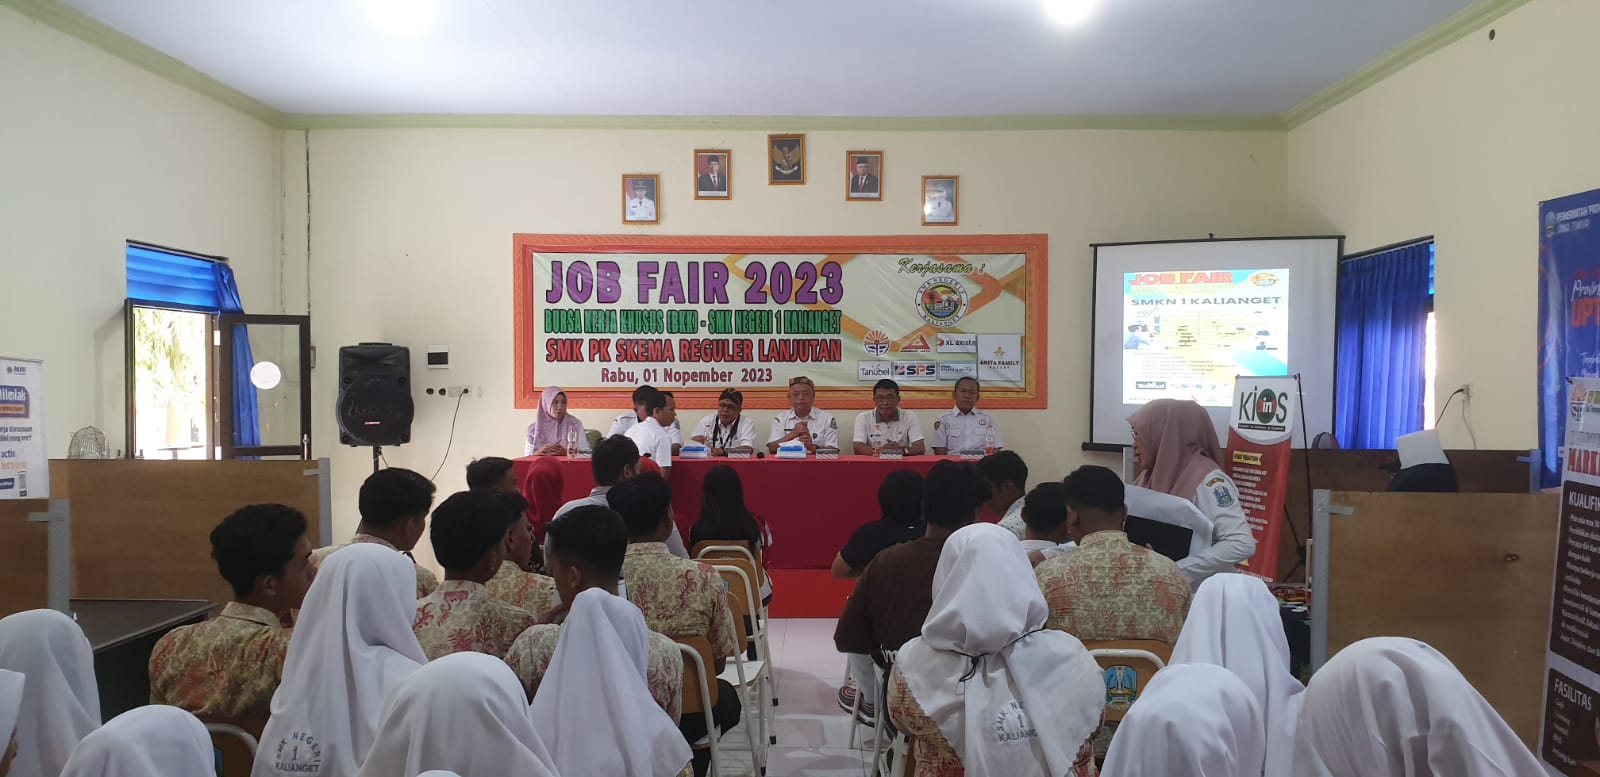 Acara Job Fair yang dilaksanakan oleh SMKN 1 Kalianget